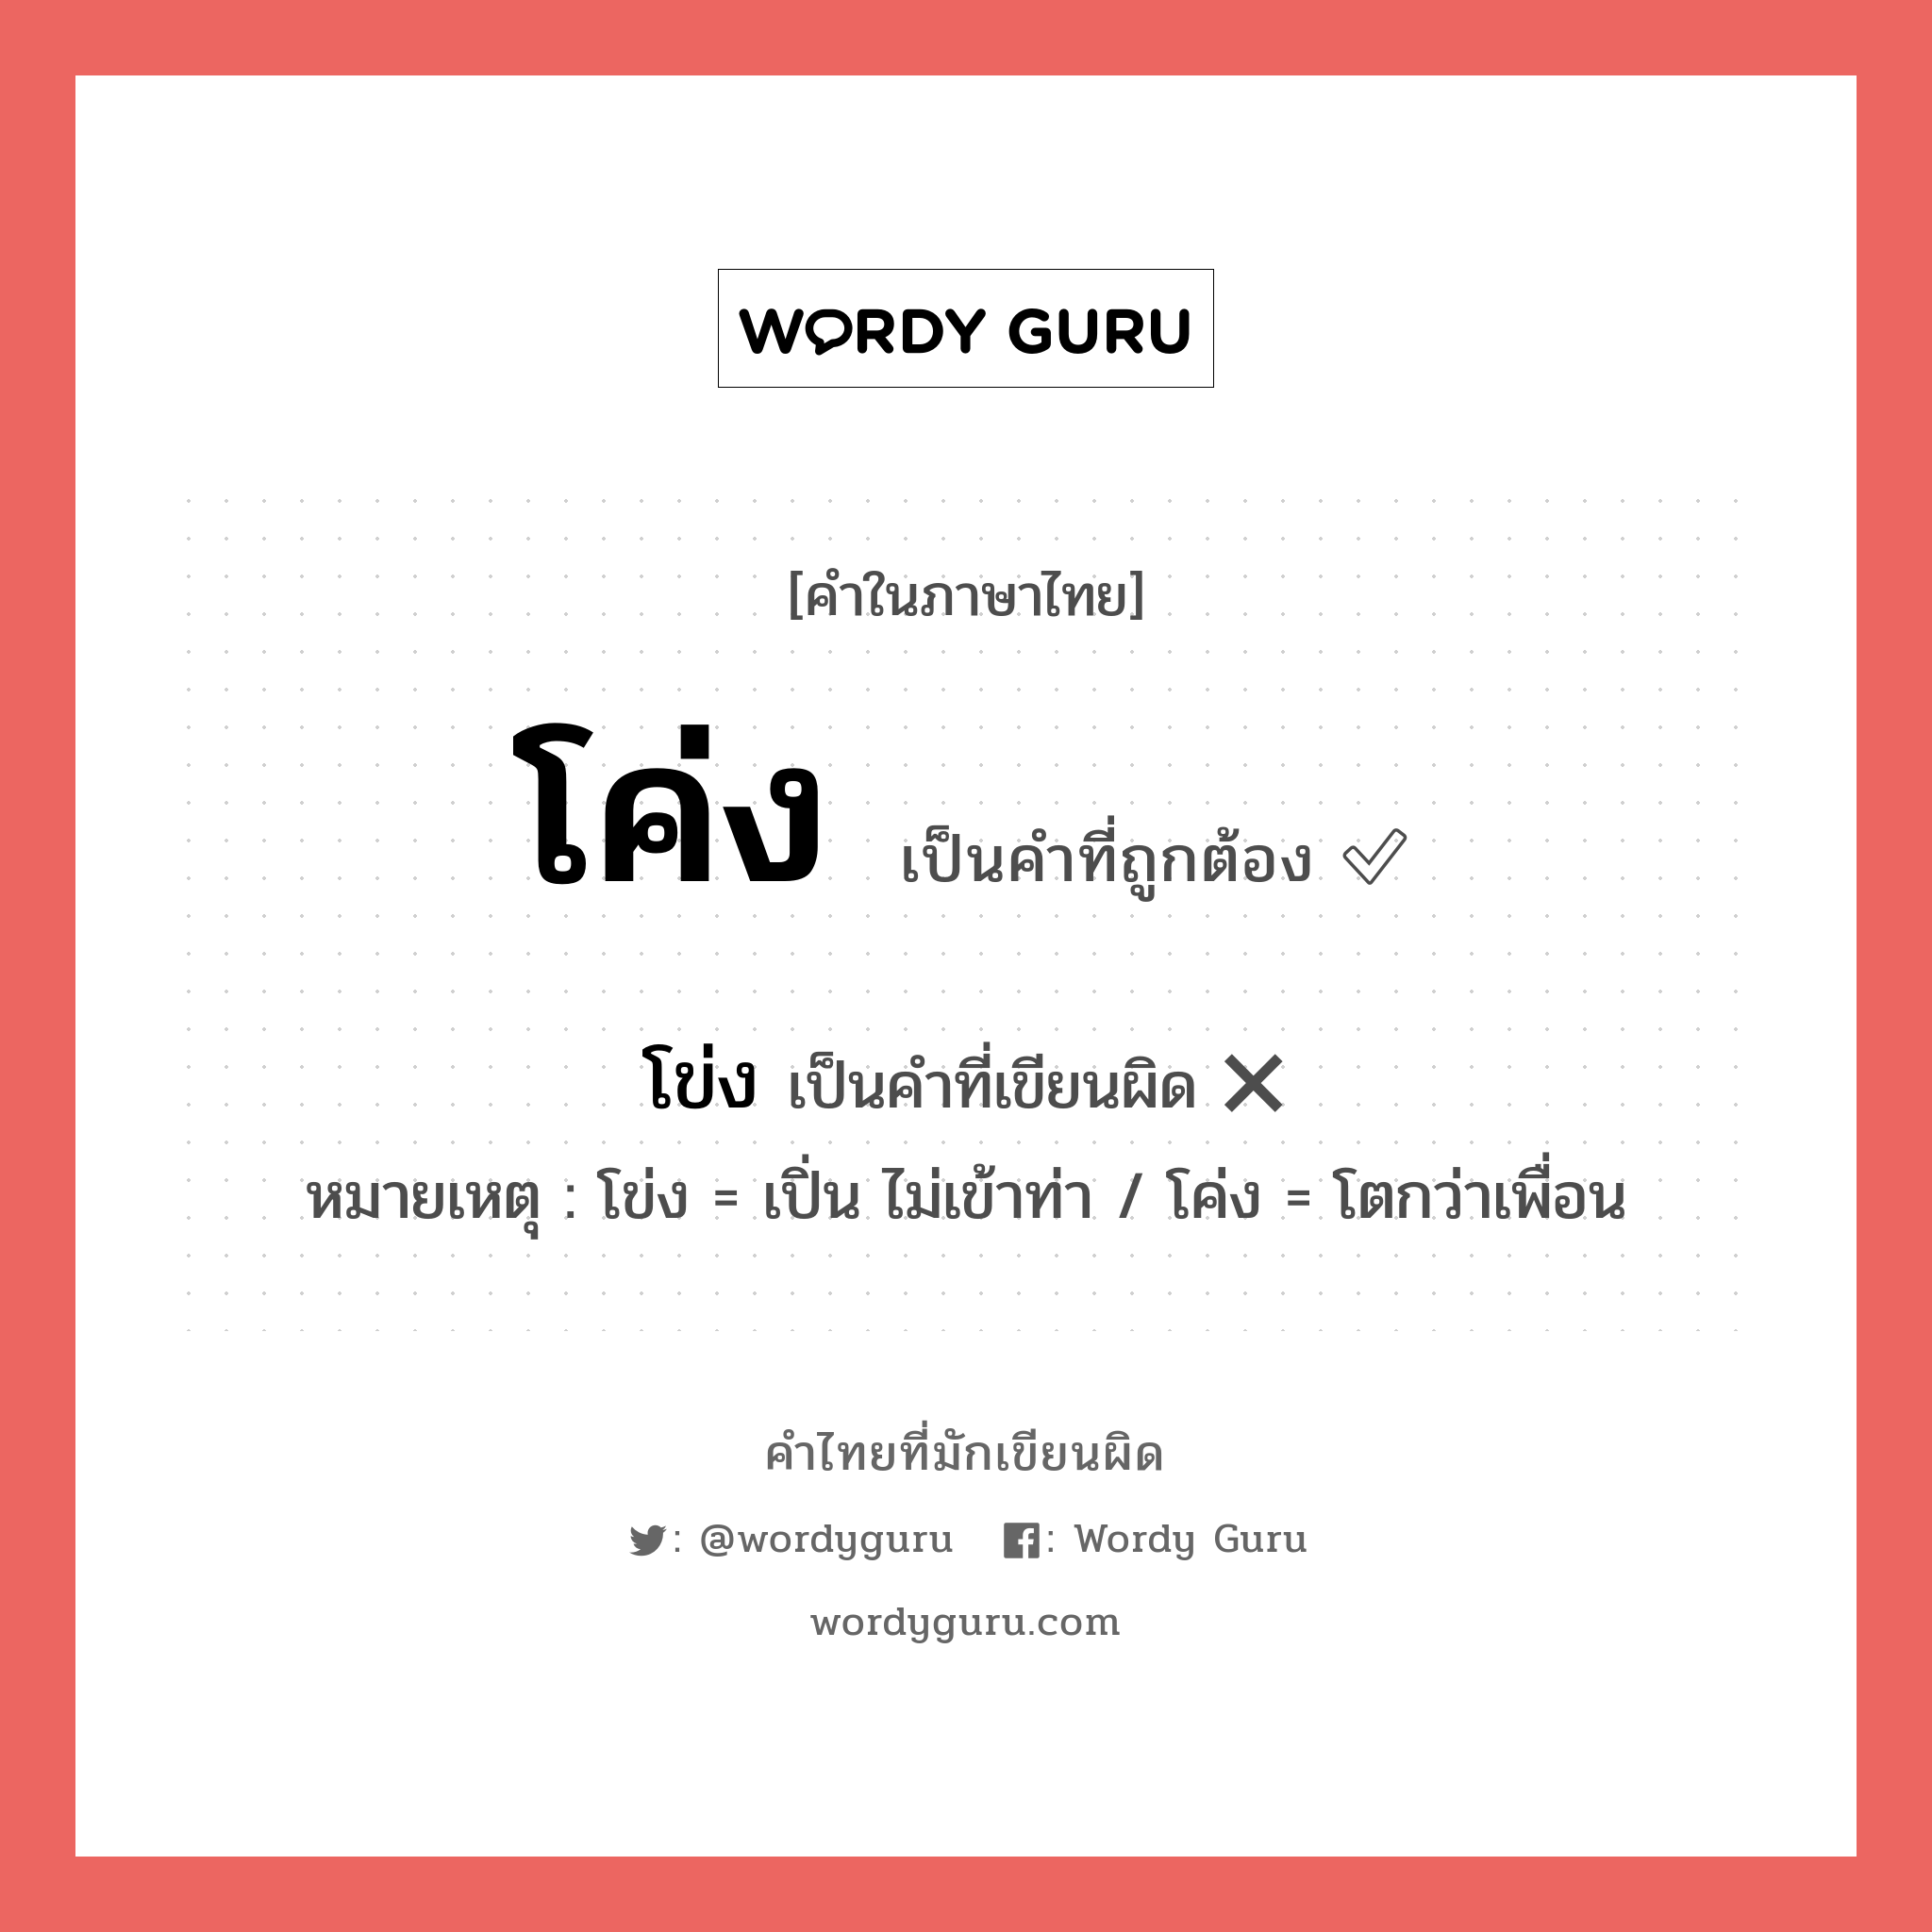 โค่ง หรือ โข่ง คำไหนเขียนถูก?, คำในภาษาไทยที่มักเขียนผิด โค่ง คำที่ผิด ❌ โข่ง หมายเหตุ โข่ง = เปิ่น ไม่เข้าท่า / โค่ง = โตกว่าเพื่อน